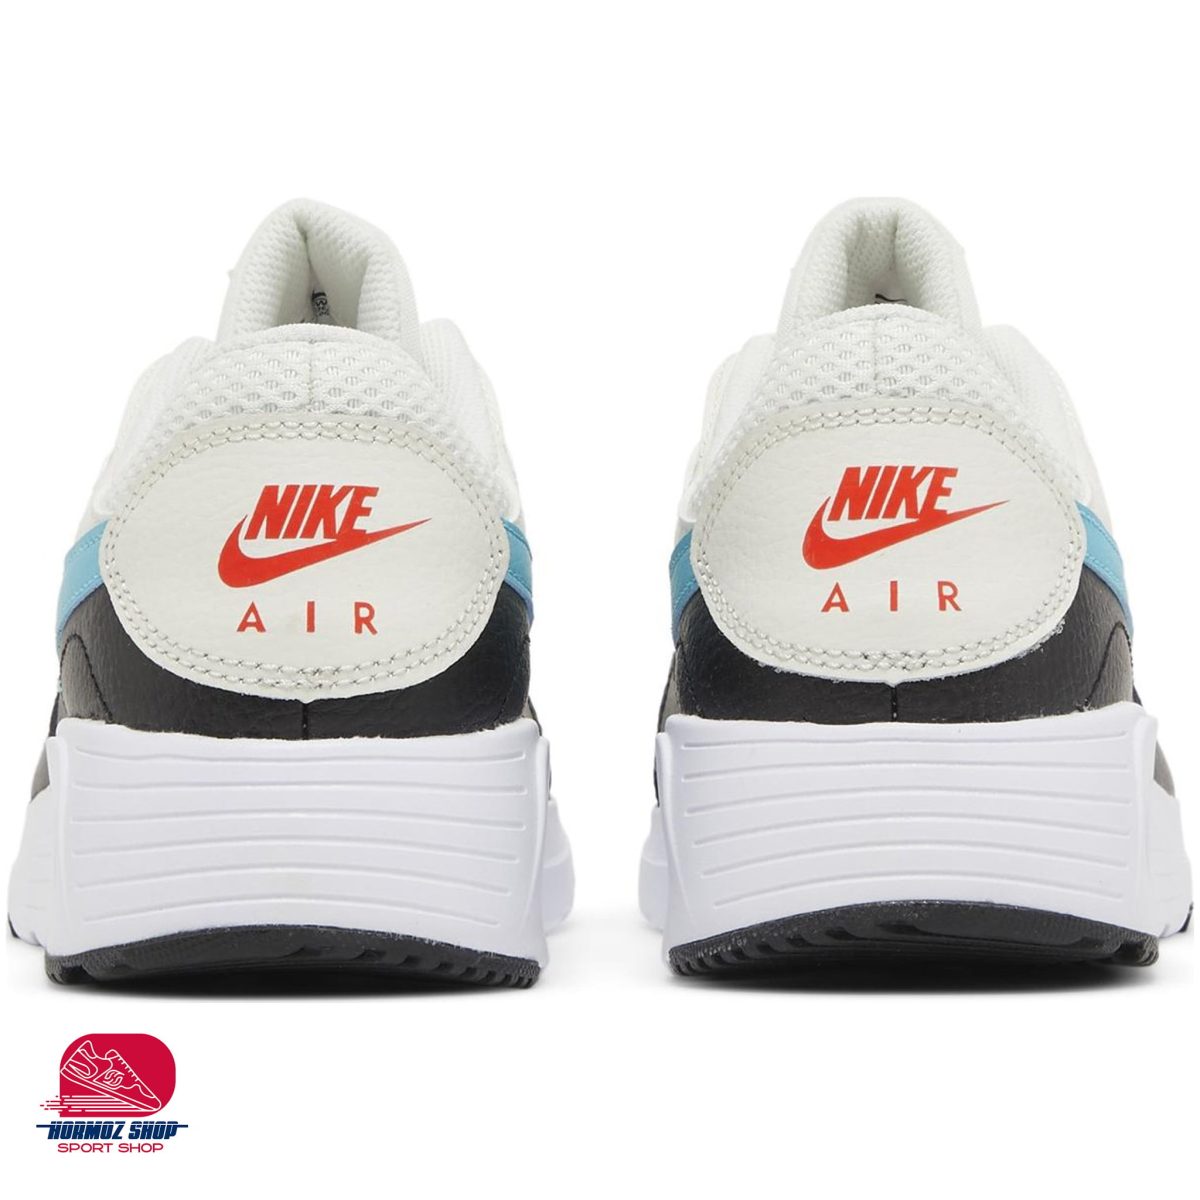 Nike cw4554 104 6